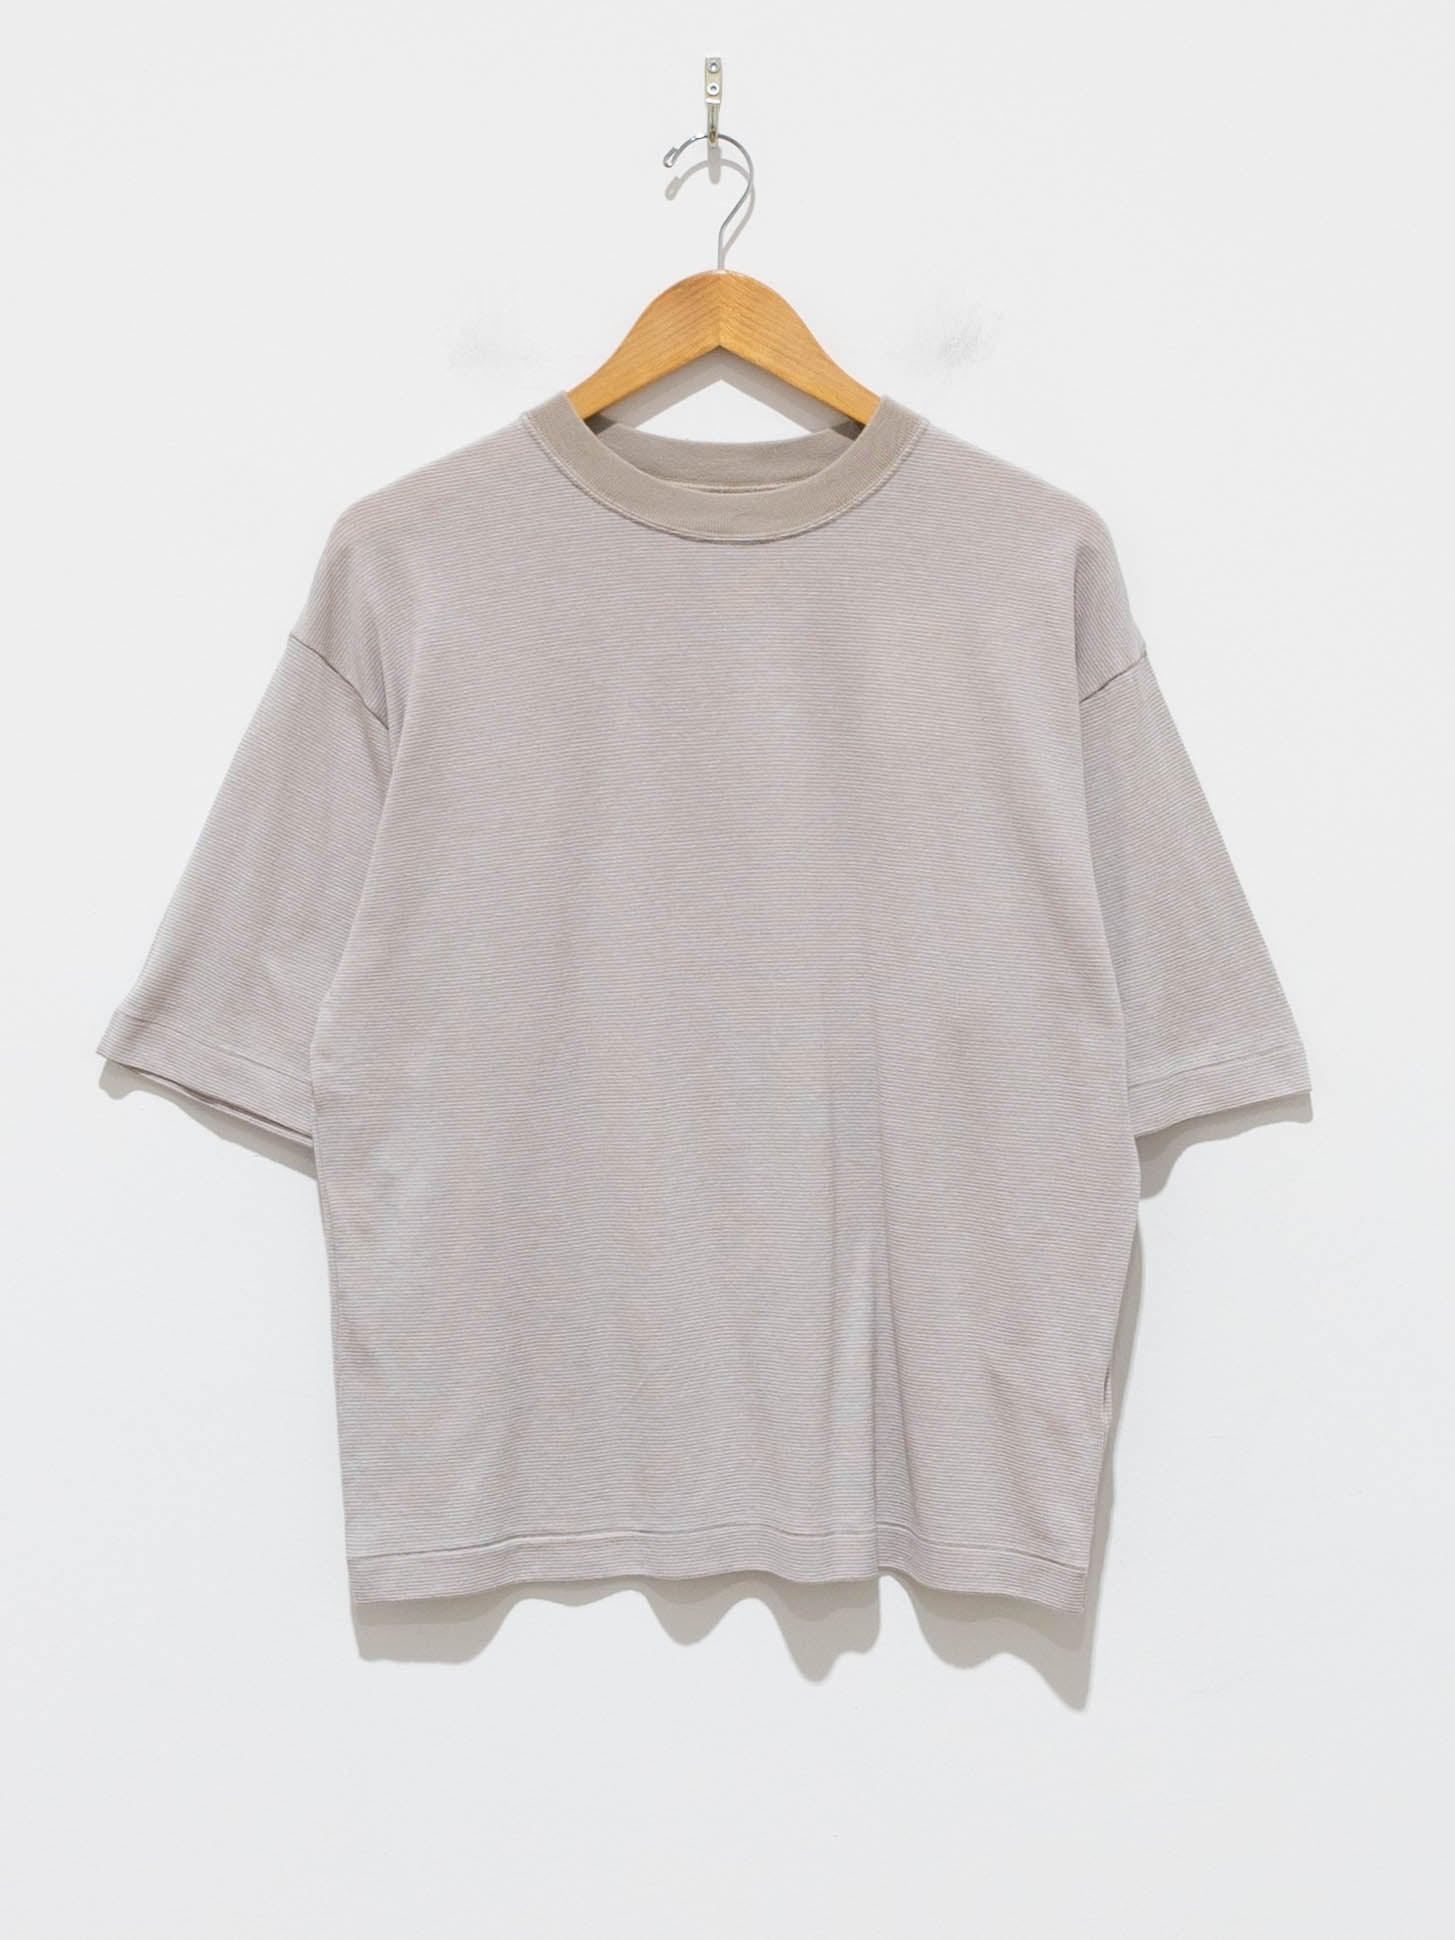 Cotton Linen Links Border T-Shirt (Women's) - Beige